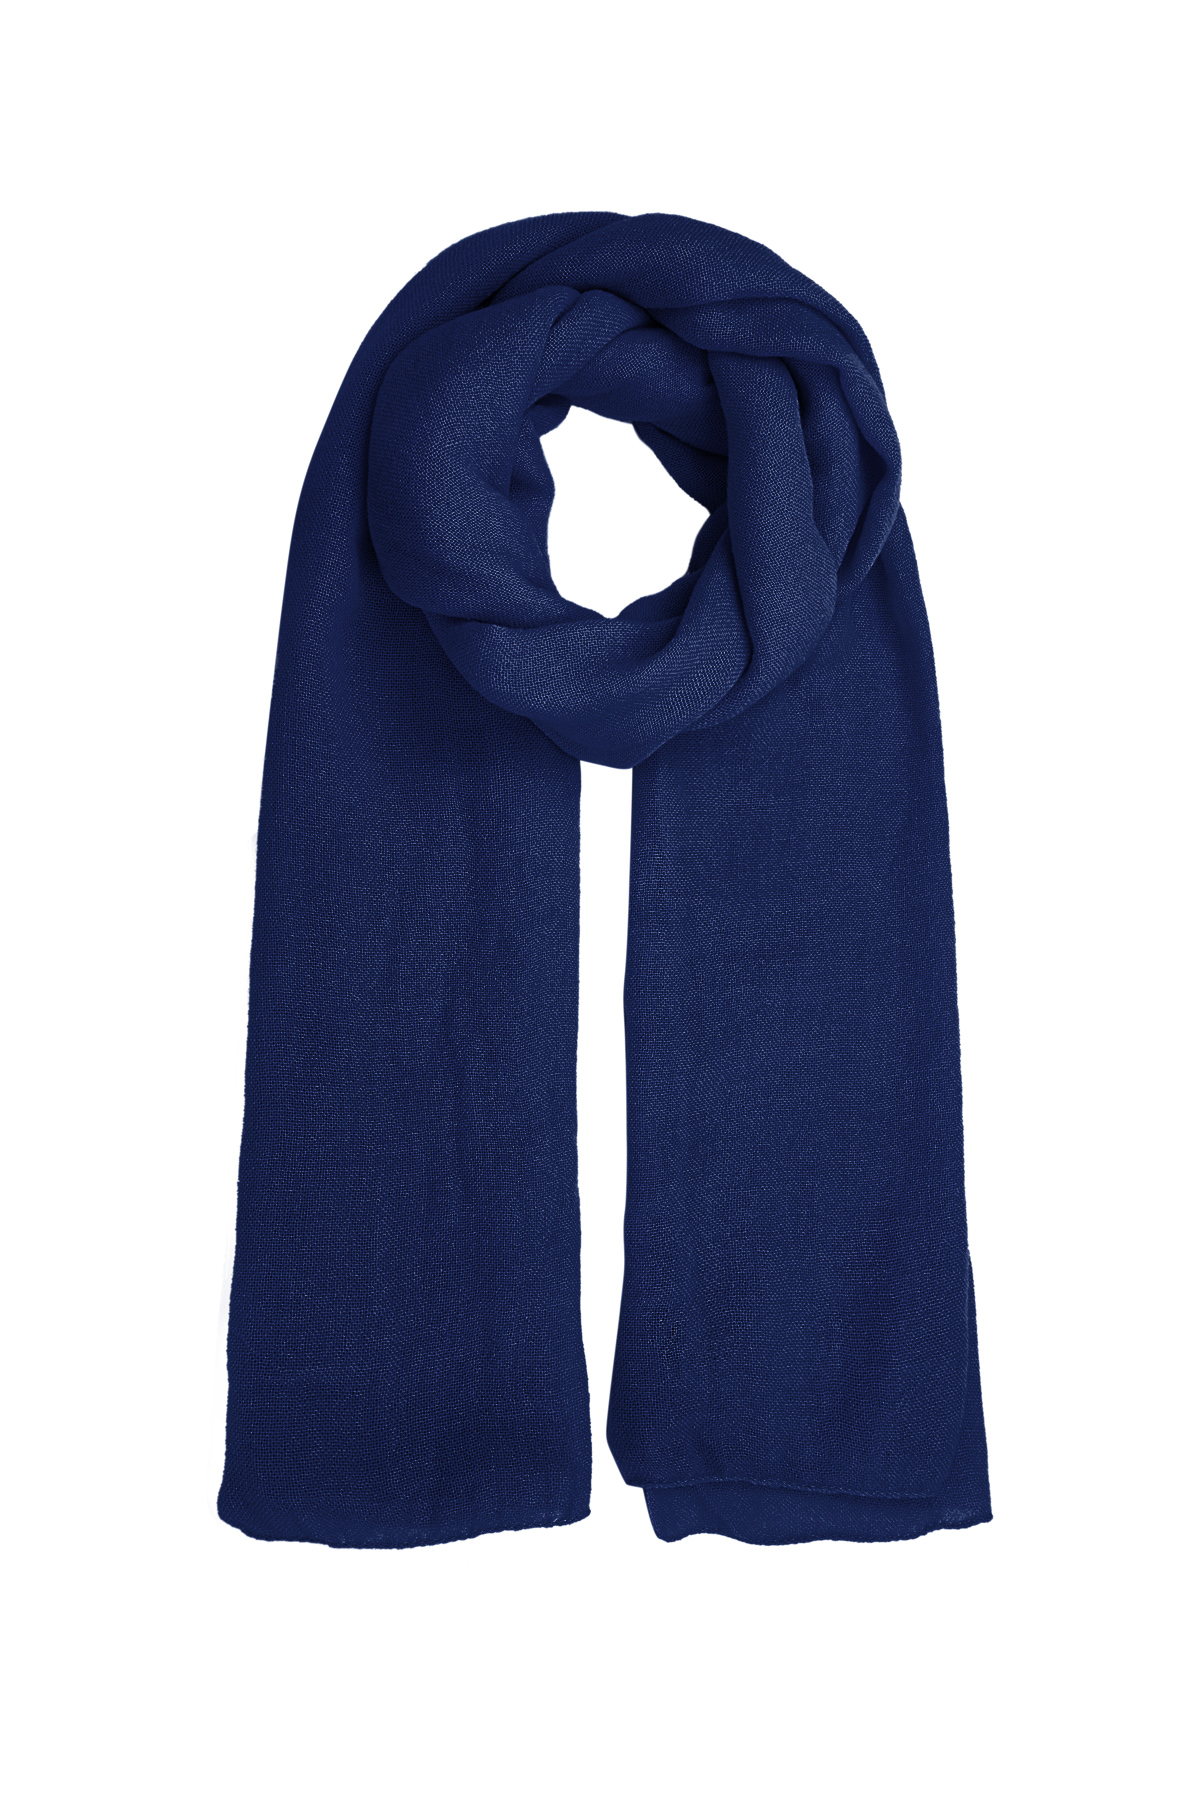 Sjaal effen kleur - donkerblauw h5 